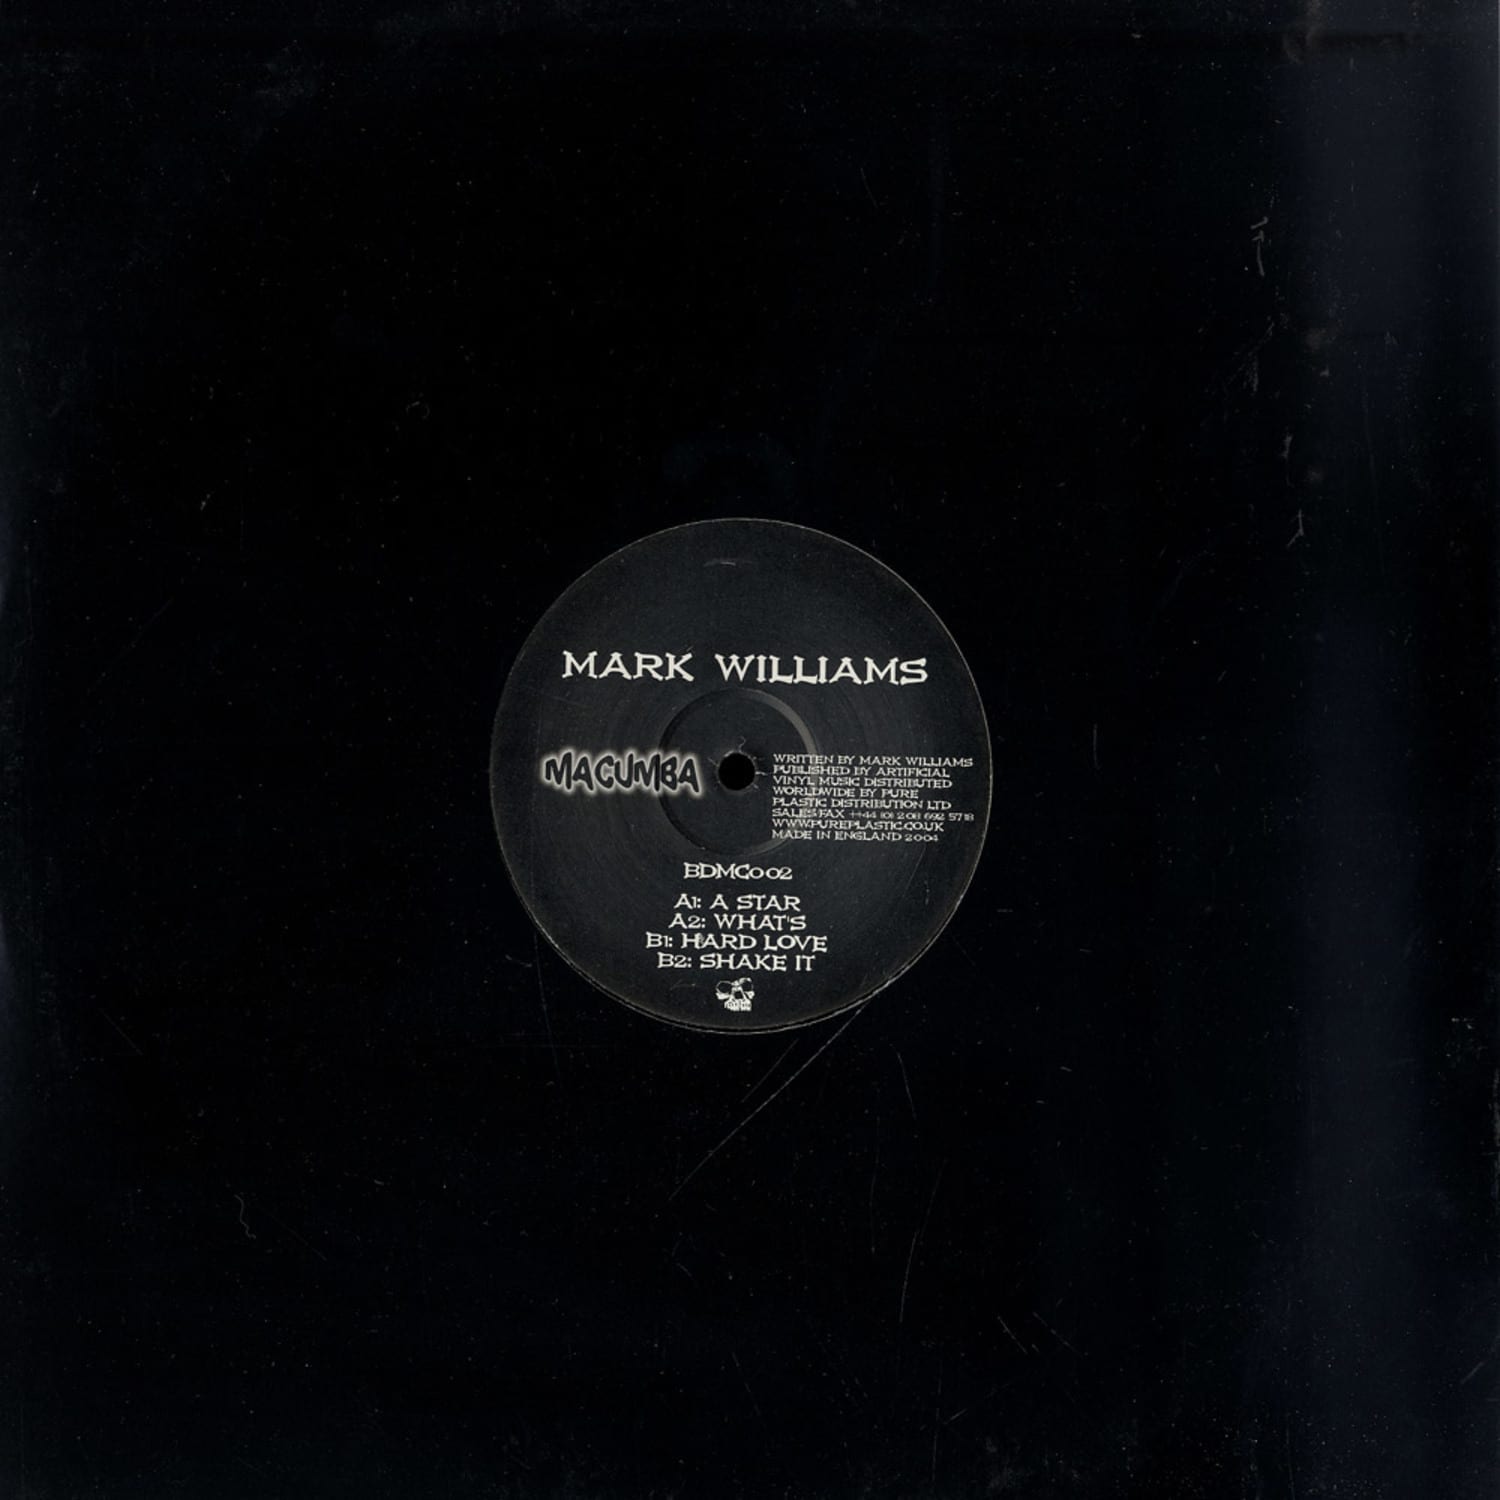 Mark Williams - A STAR